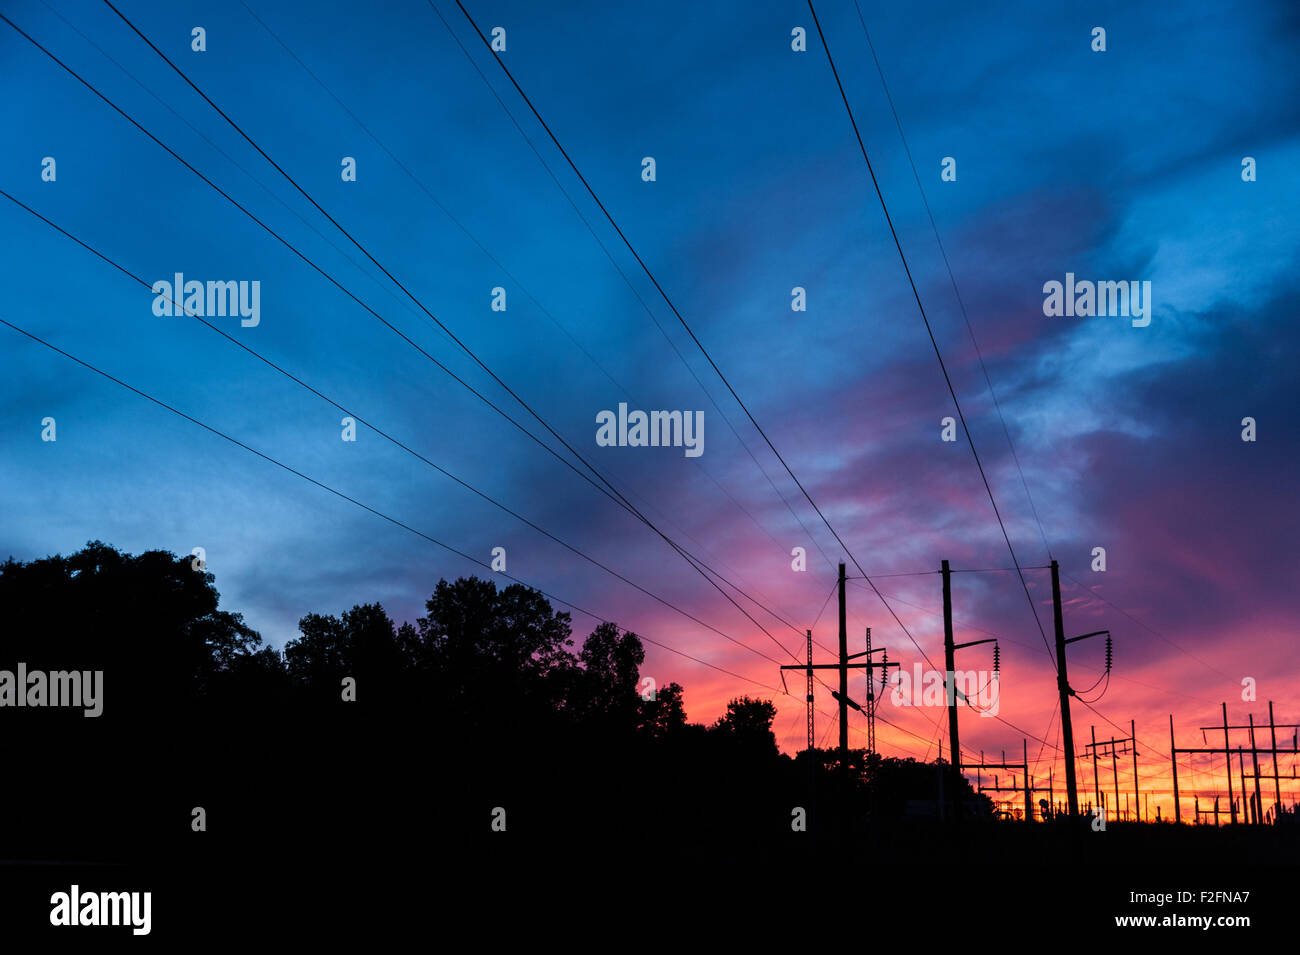 Stromleitungen konvergieren in einem Umspannwerk Silhouette gegen eine lebendige Sonnenuntergang Himmel. Stockfoto